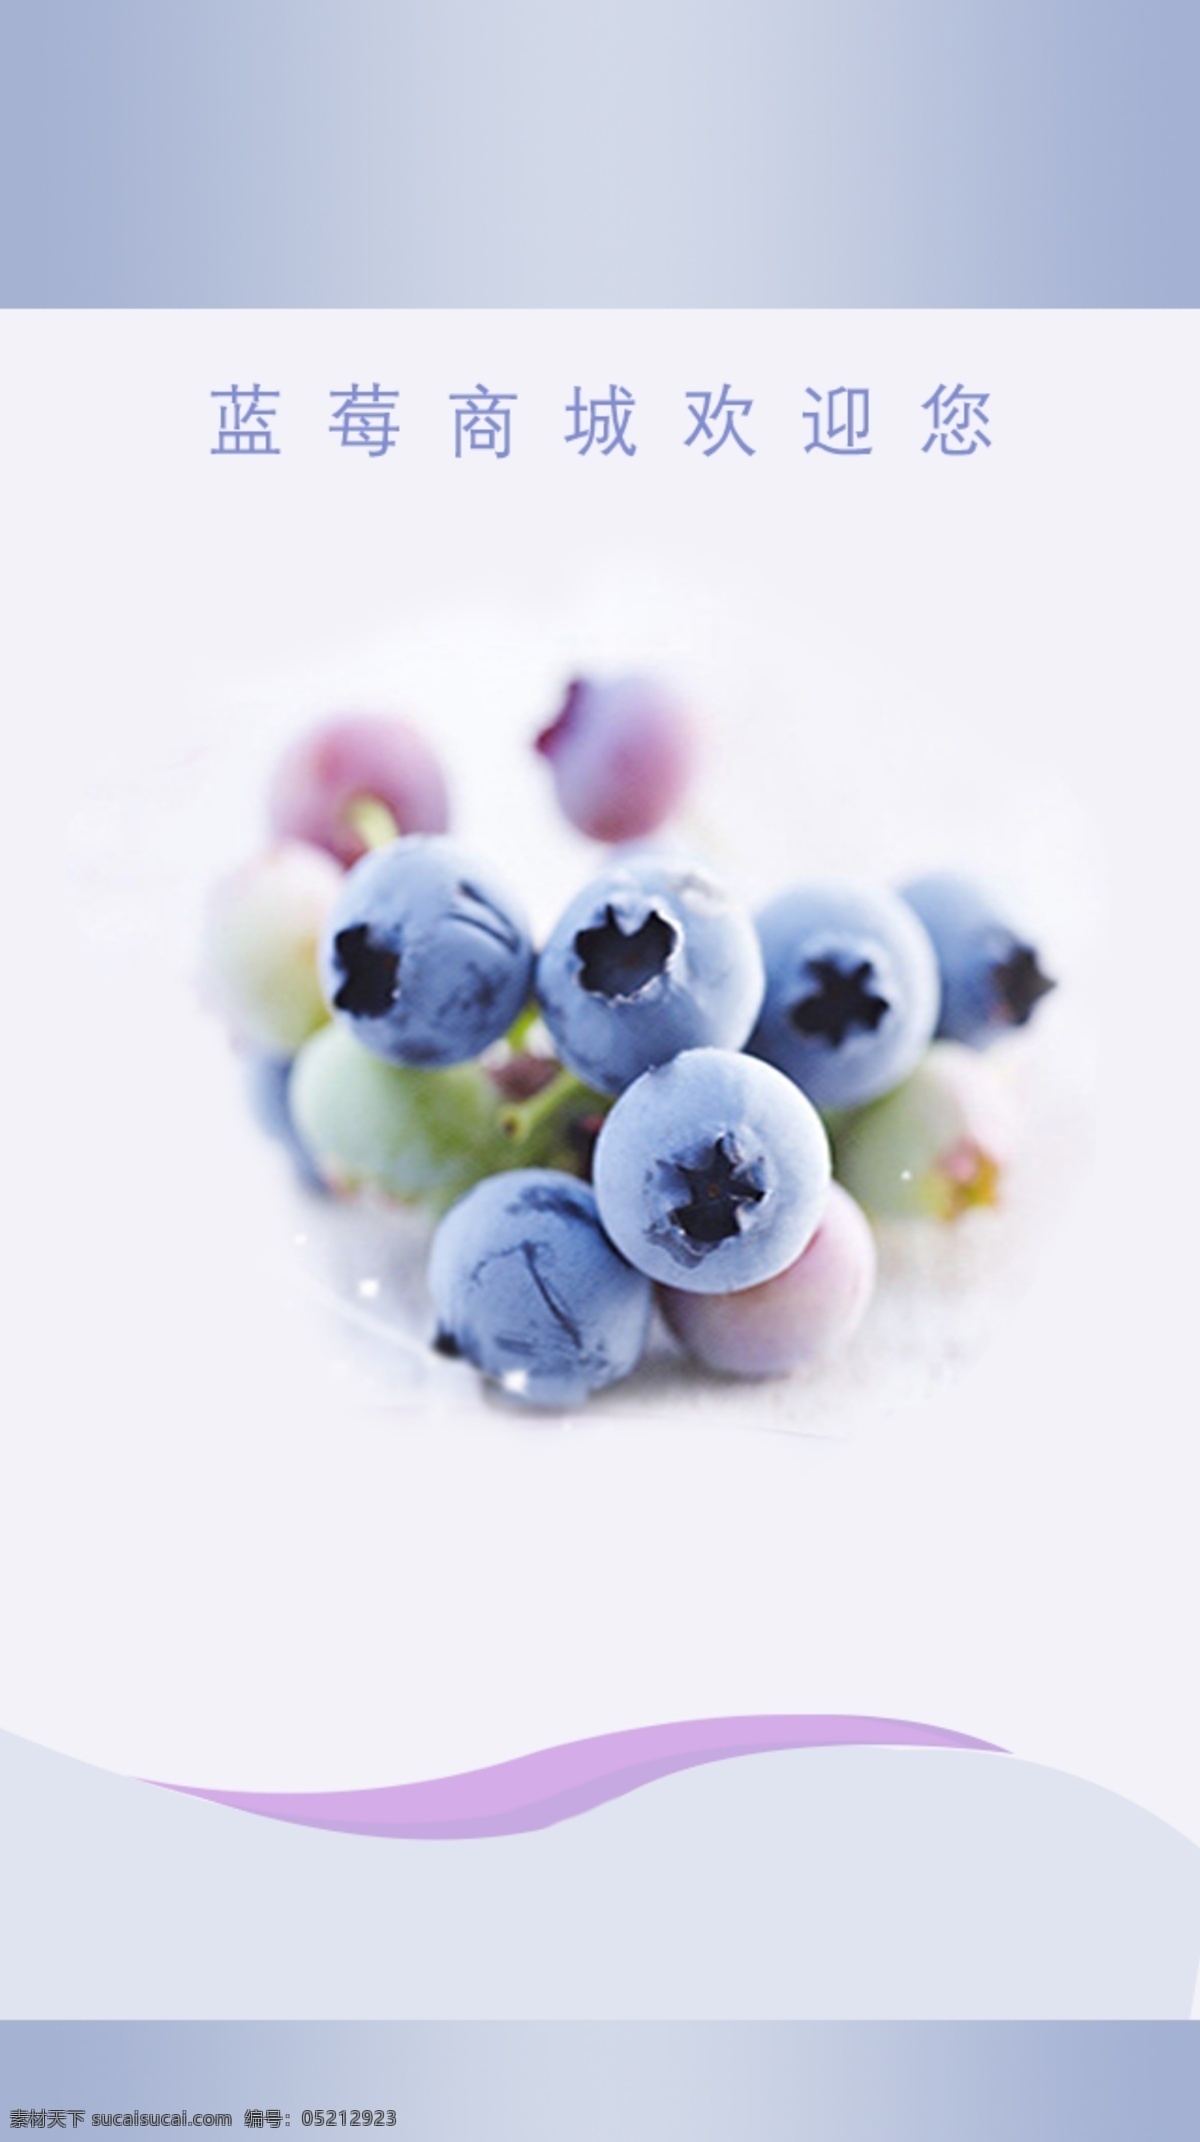 蓝莓启动界面 手机 app 蓝莓 app蓝莓 蓝莓启动画面 蓝莓背景 淘宝界面设计 淘宝装修模板